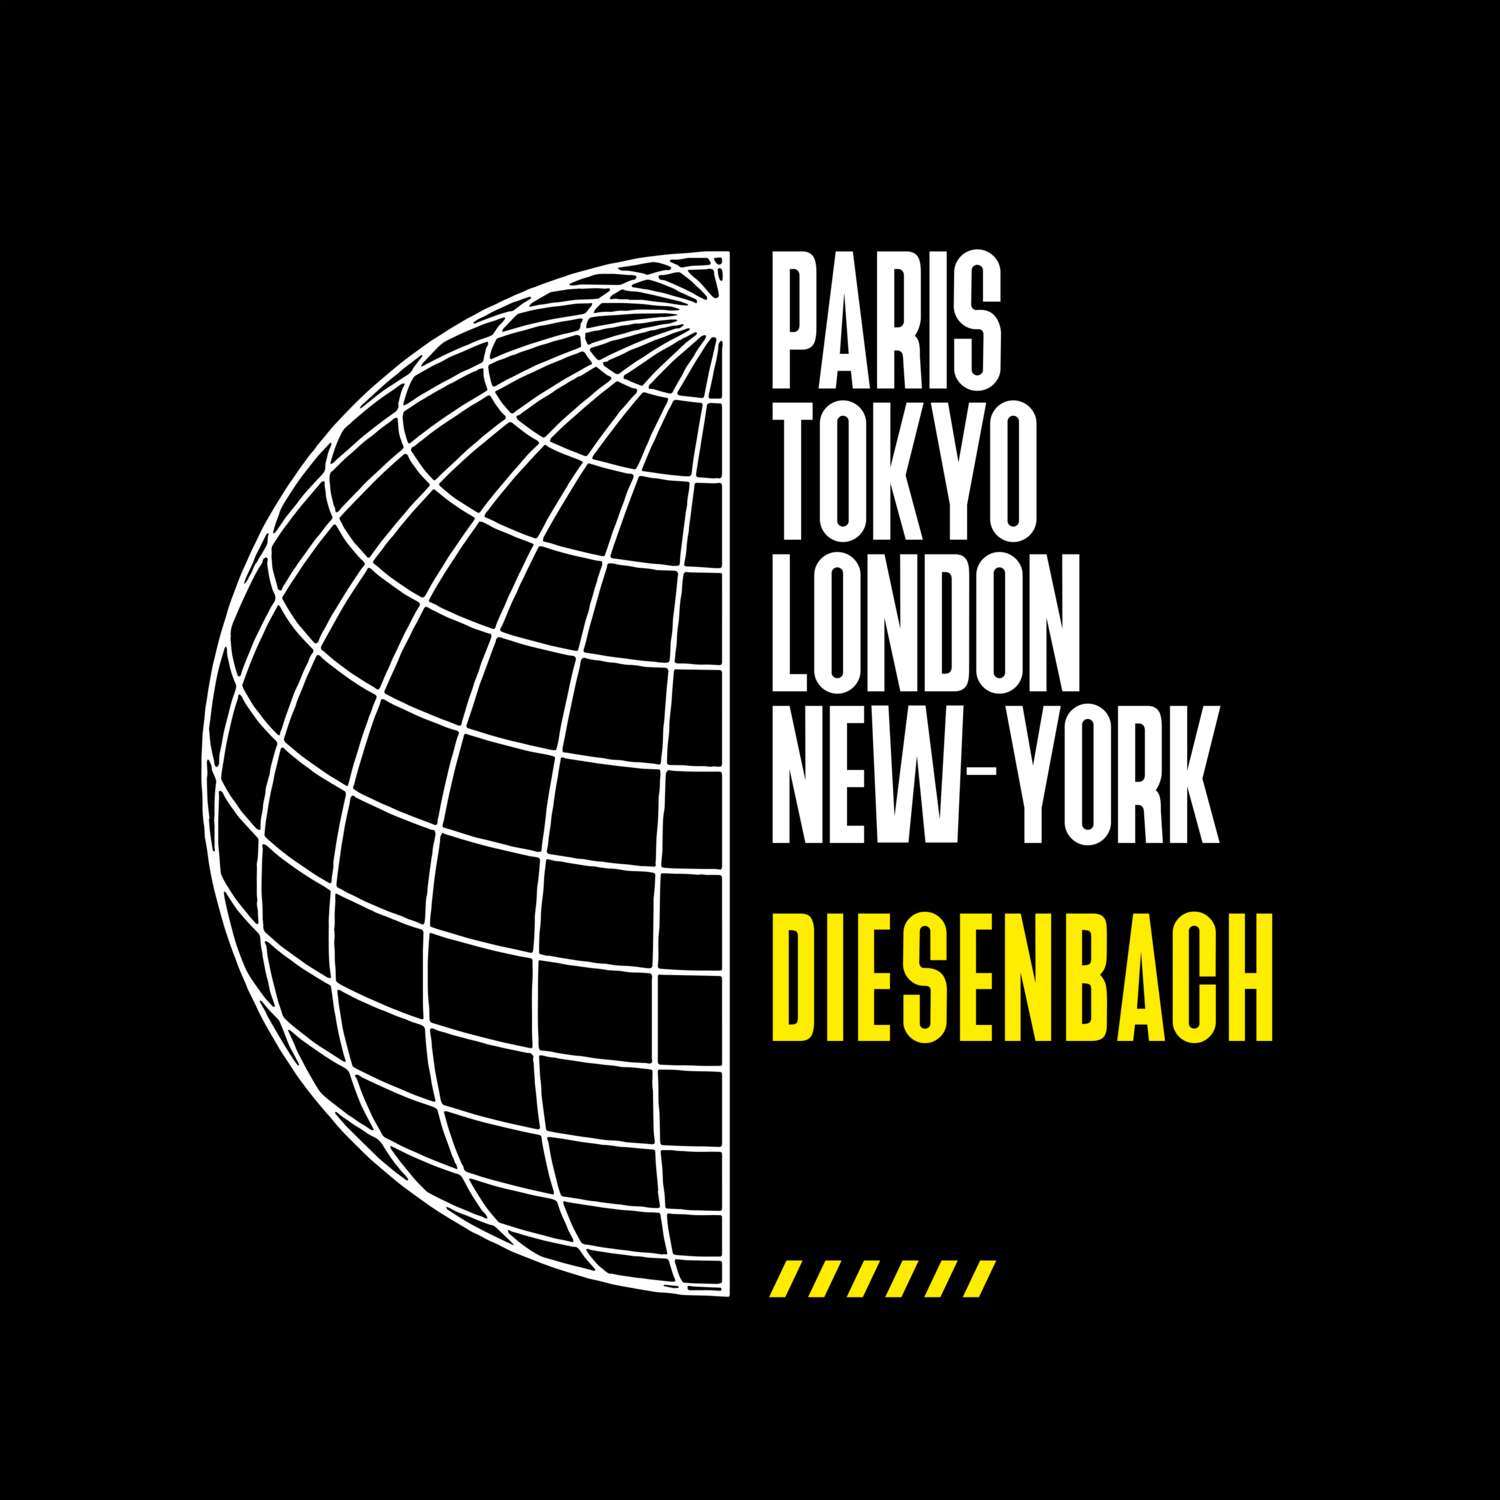 Diesenbach T-Shirt »Paris Tokyo London«